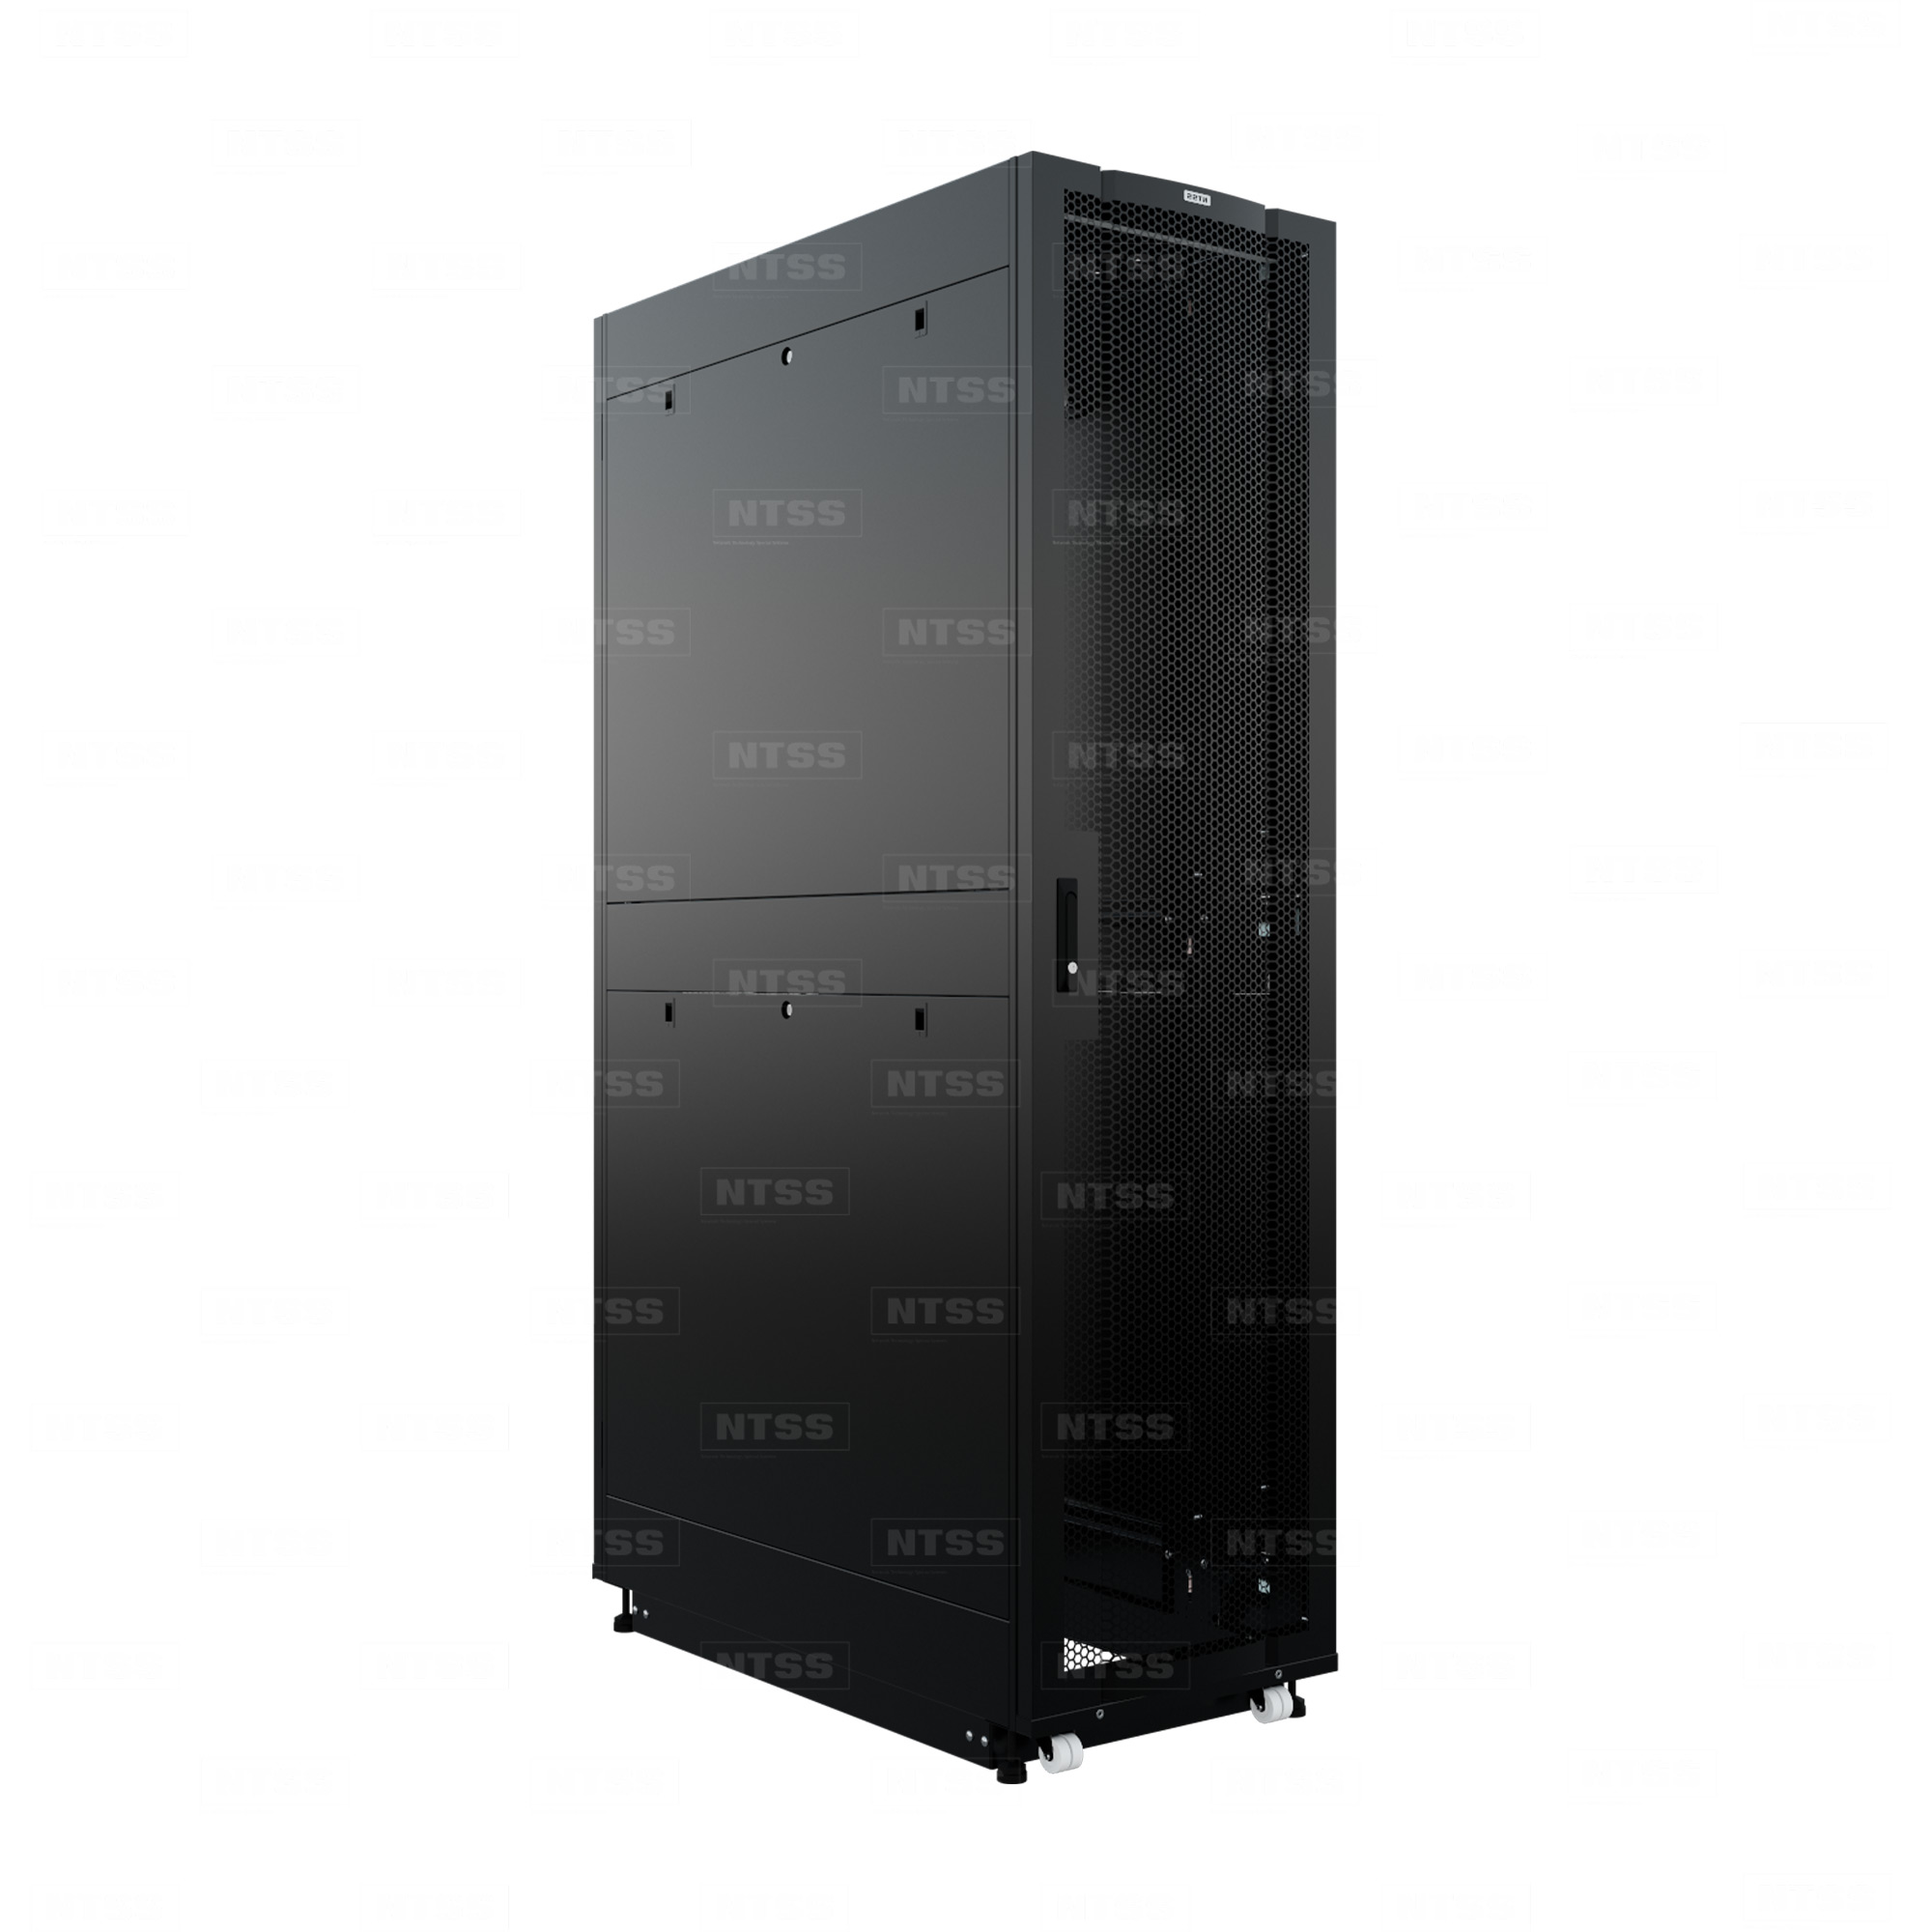 19" Напольный серверный шкаф NTSS ПРОЦОД PC МАСТЕР 45U 600х1200 мм, сварной в сборе, передняя дверь перфорация, задняя дверь распашная двойная перфорированная, боковые стенки, регулируемые опоры, ролики, черный RAL 9005